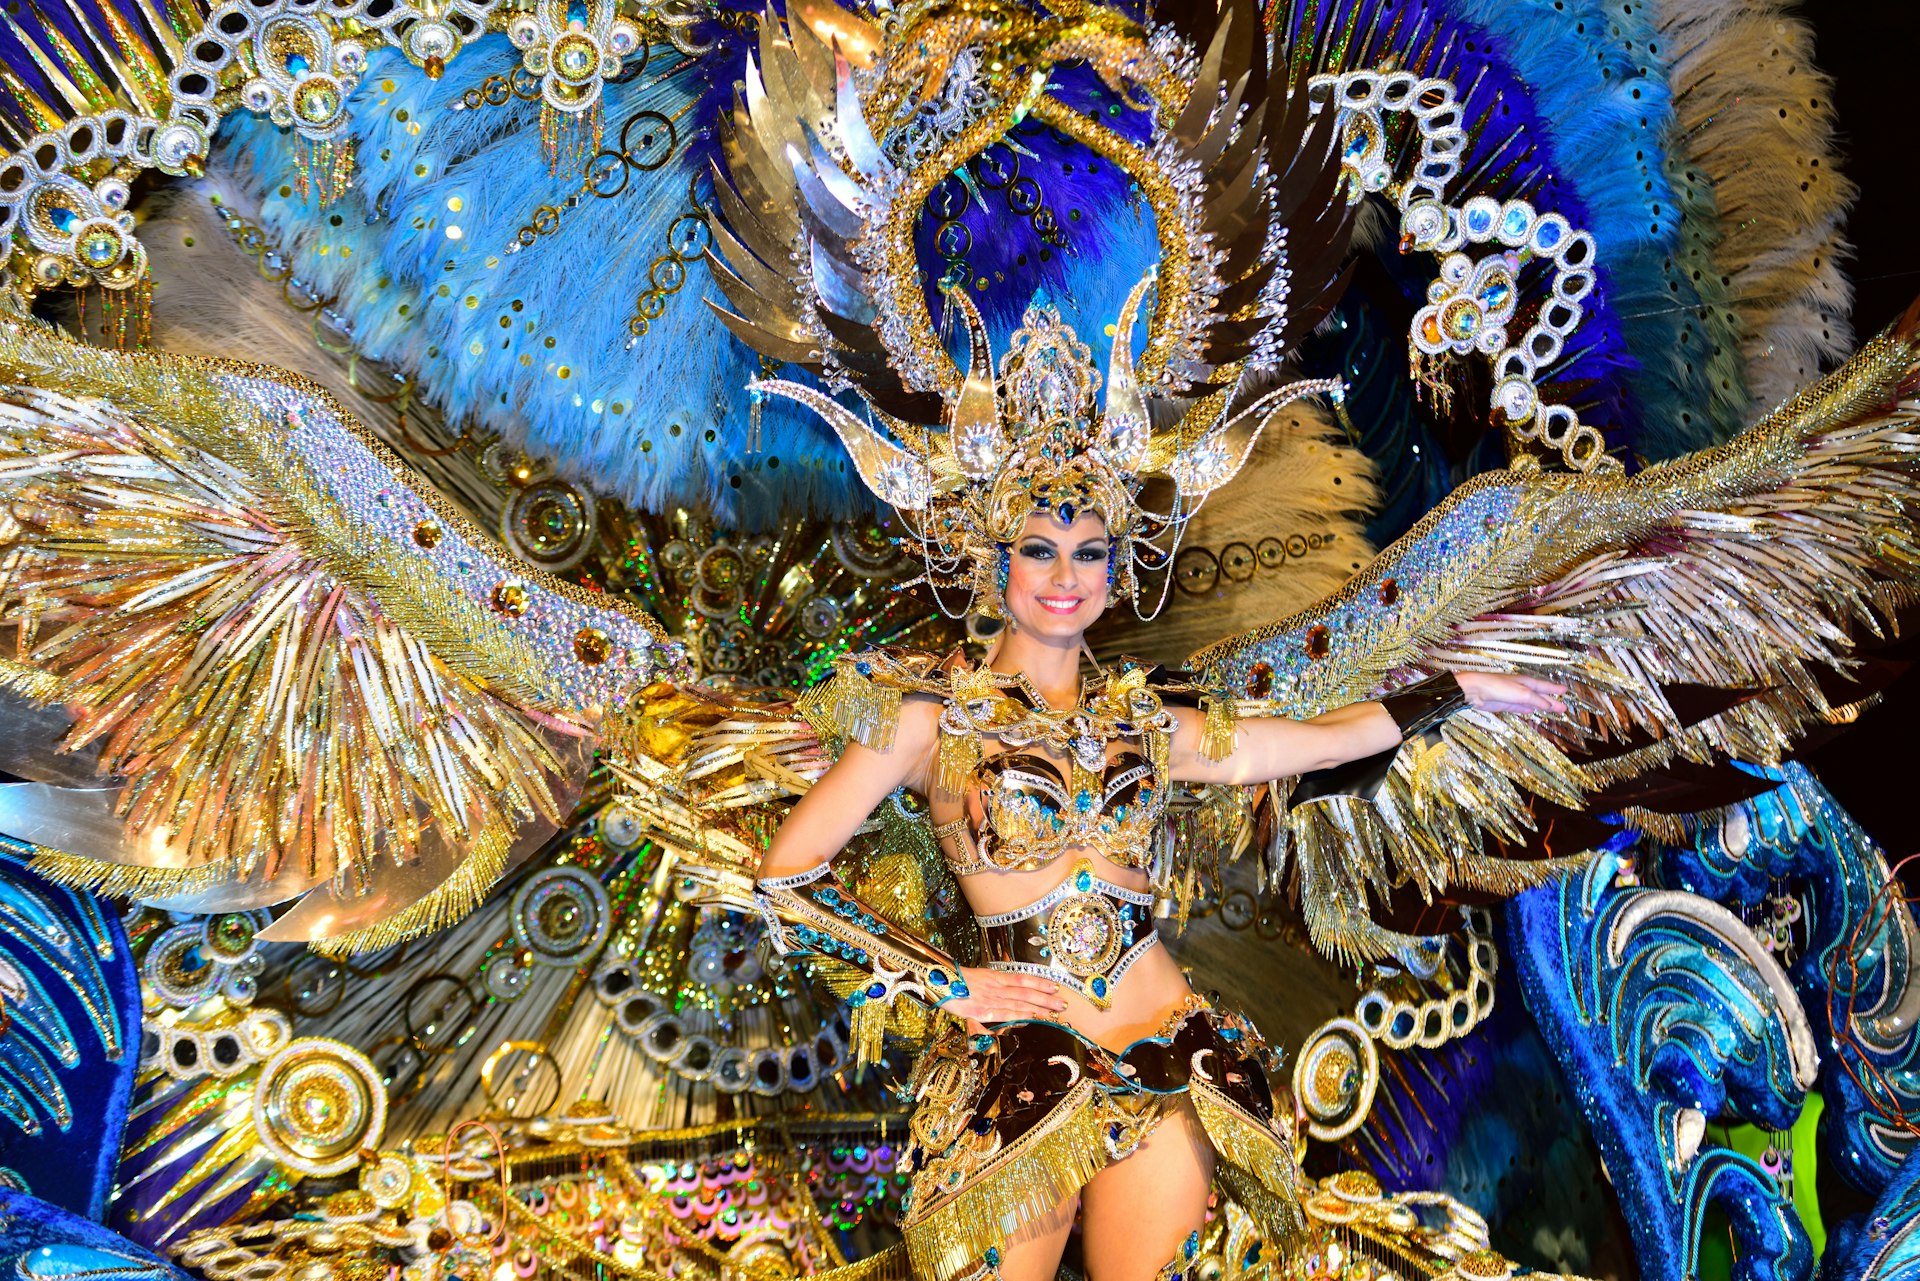 A woman in elaborate gold and blue dress dances at Carnaval in Santa Cruz de Tenerife